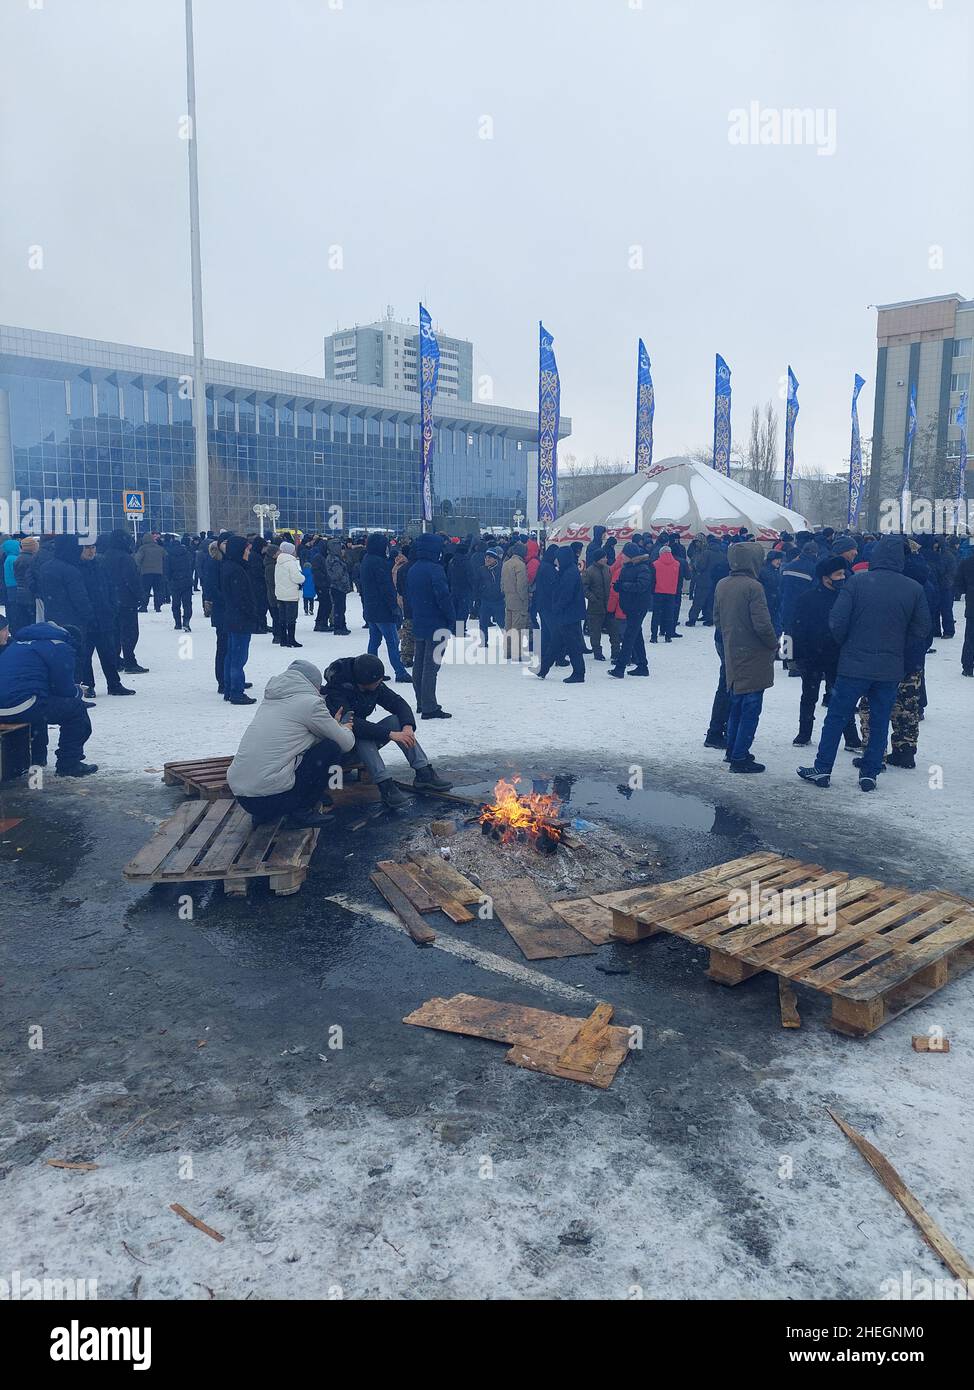 Les manifestations ont fait rage dans plusieurs villes du Kazakhstan depuis janvier 2nd, suite à une forte augmentation des prix du carburant dans l'ancienne république soviétique.Des milliers de personnes sont descendues dans la rue, une rare manifestation de dissidence dans un pays où les protestations sont étroitement contrôlées.Les forces de sécurité ont lutté pour réprimer les foules, qui ont commencé à s'enflammer les bureaux publics et à mettre le feu aux bâtiments.Aktobe, Kazakhstan. Banque D'Images